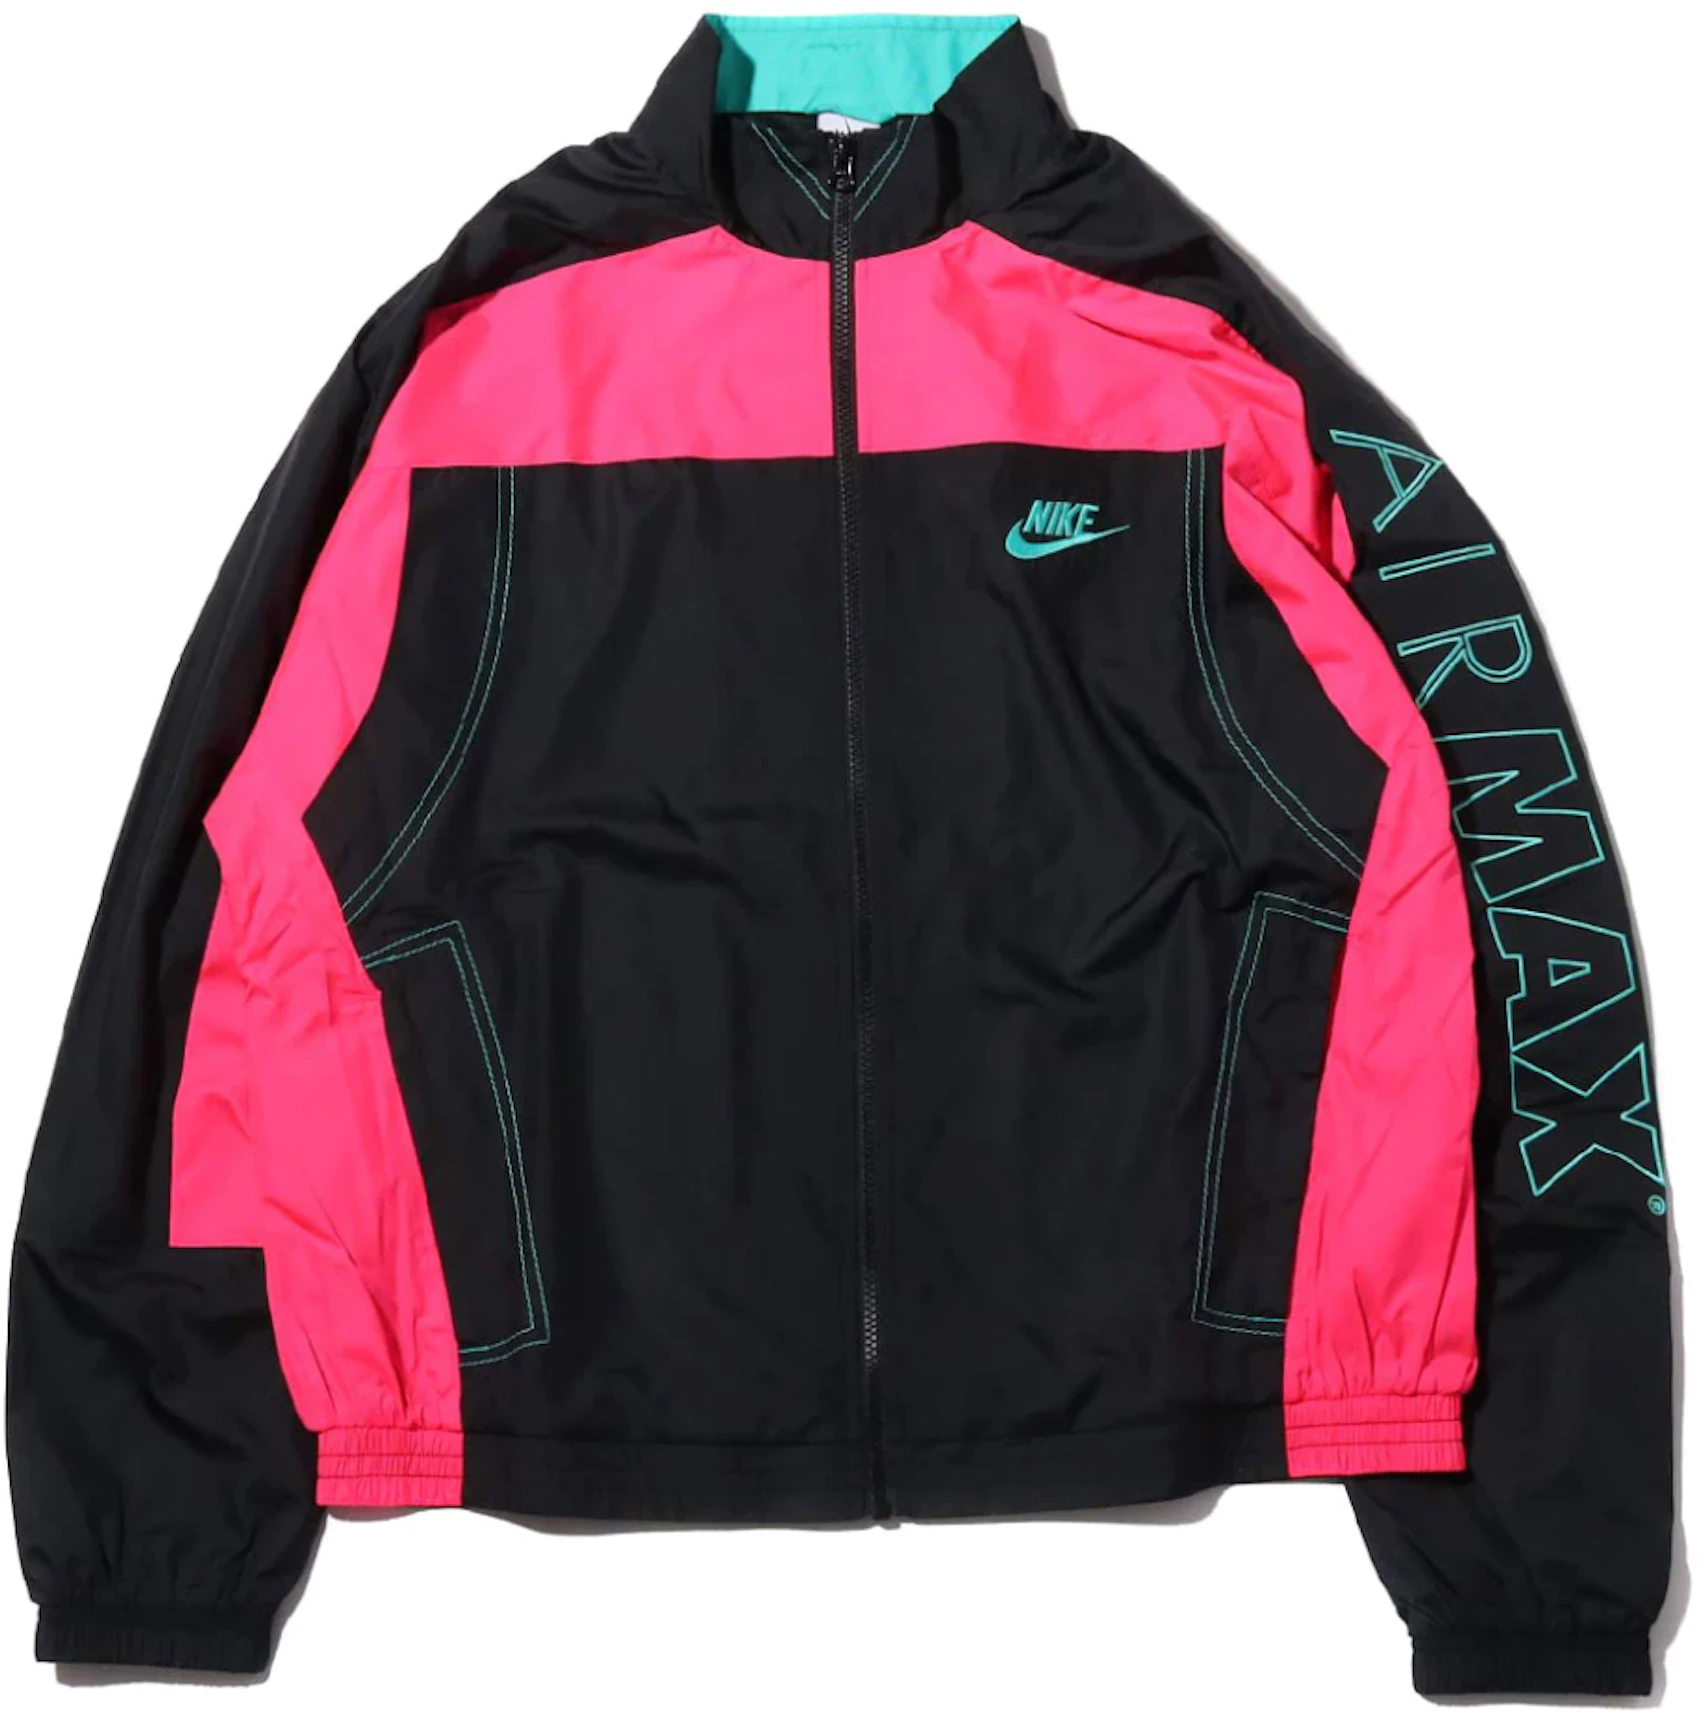 Nike x NRG Vintage Patchwork Jacket Black/Hyper Pink/Hyper Jade - SS19 ES